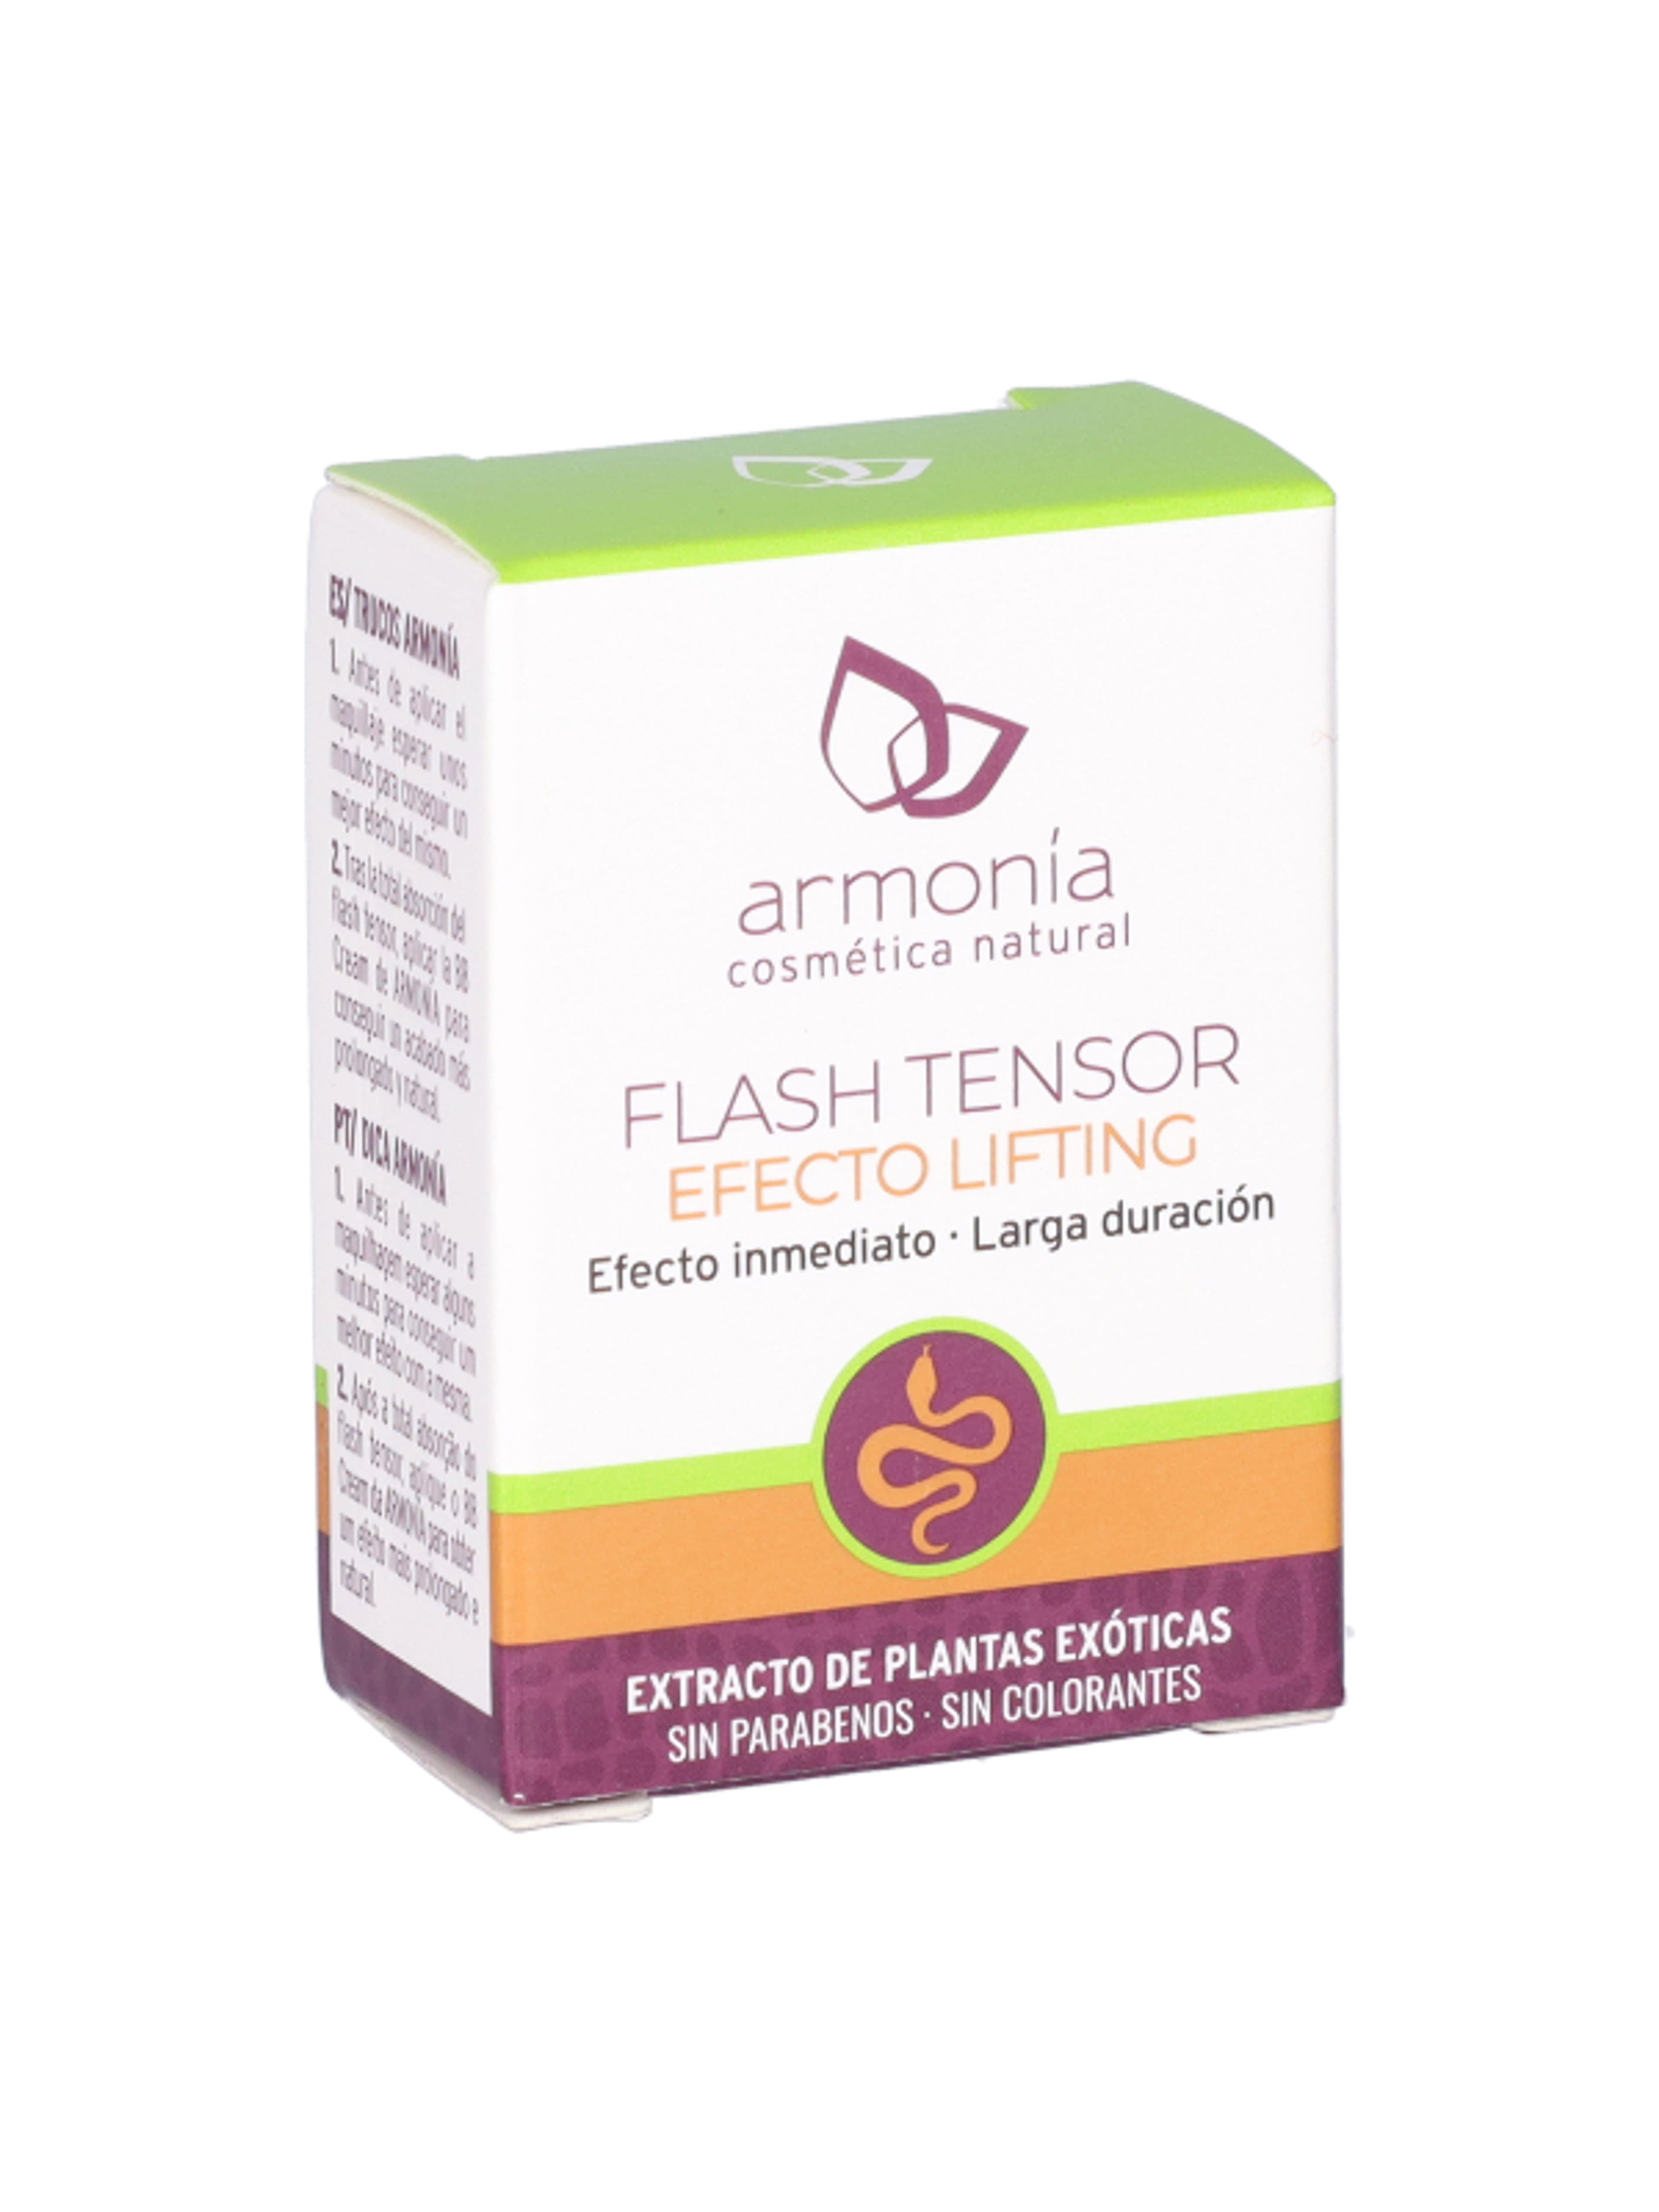 Armonia flash tensor villámfeszesítő lifting szérum - 4 ml-1